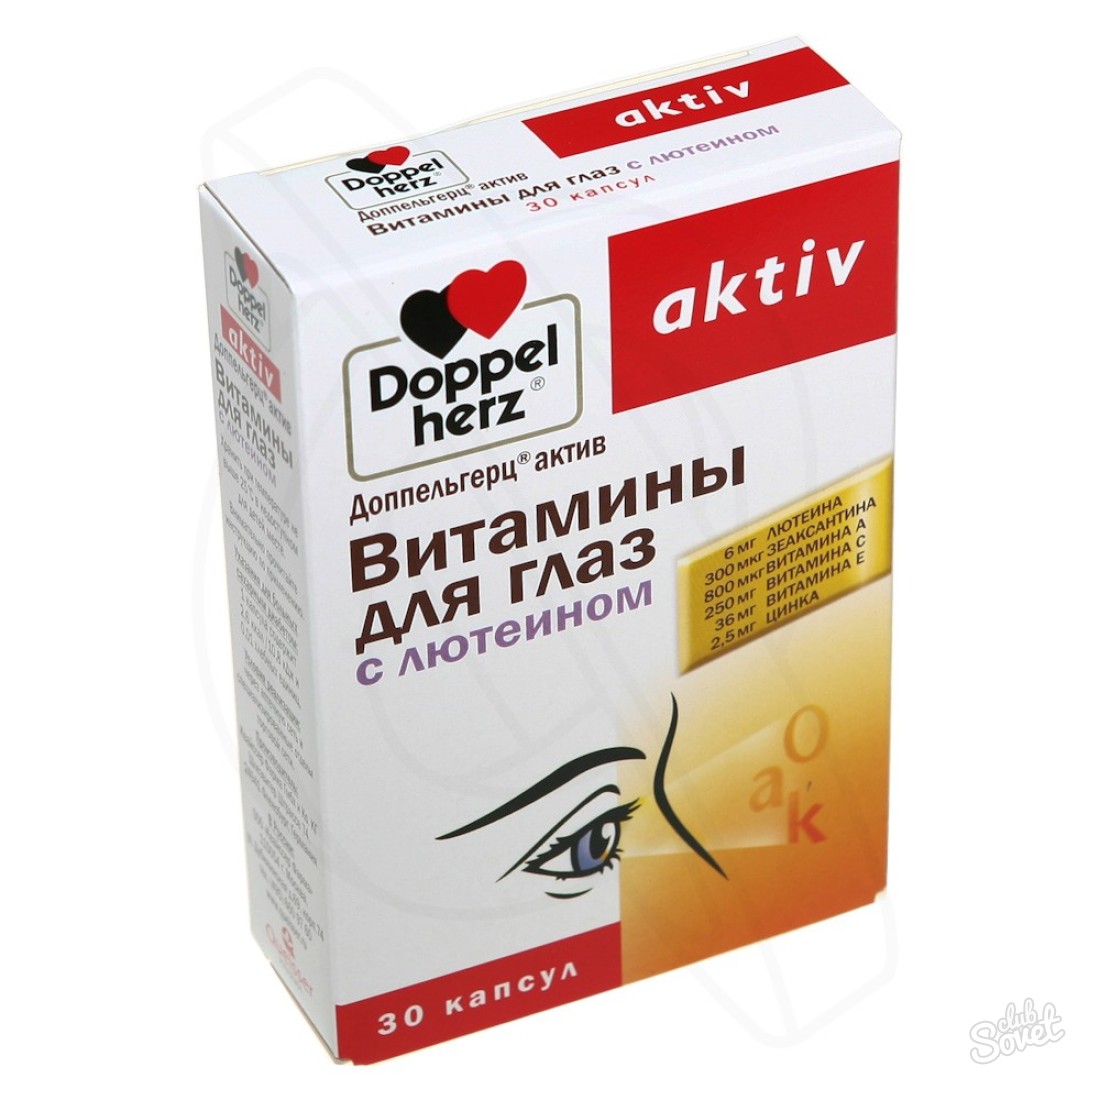 Göz için Doppeoplez vitaminleri: kullanım talimatları